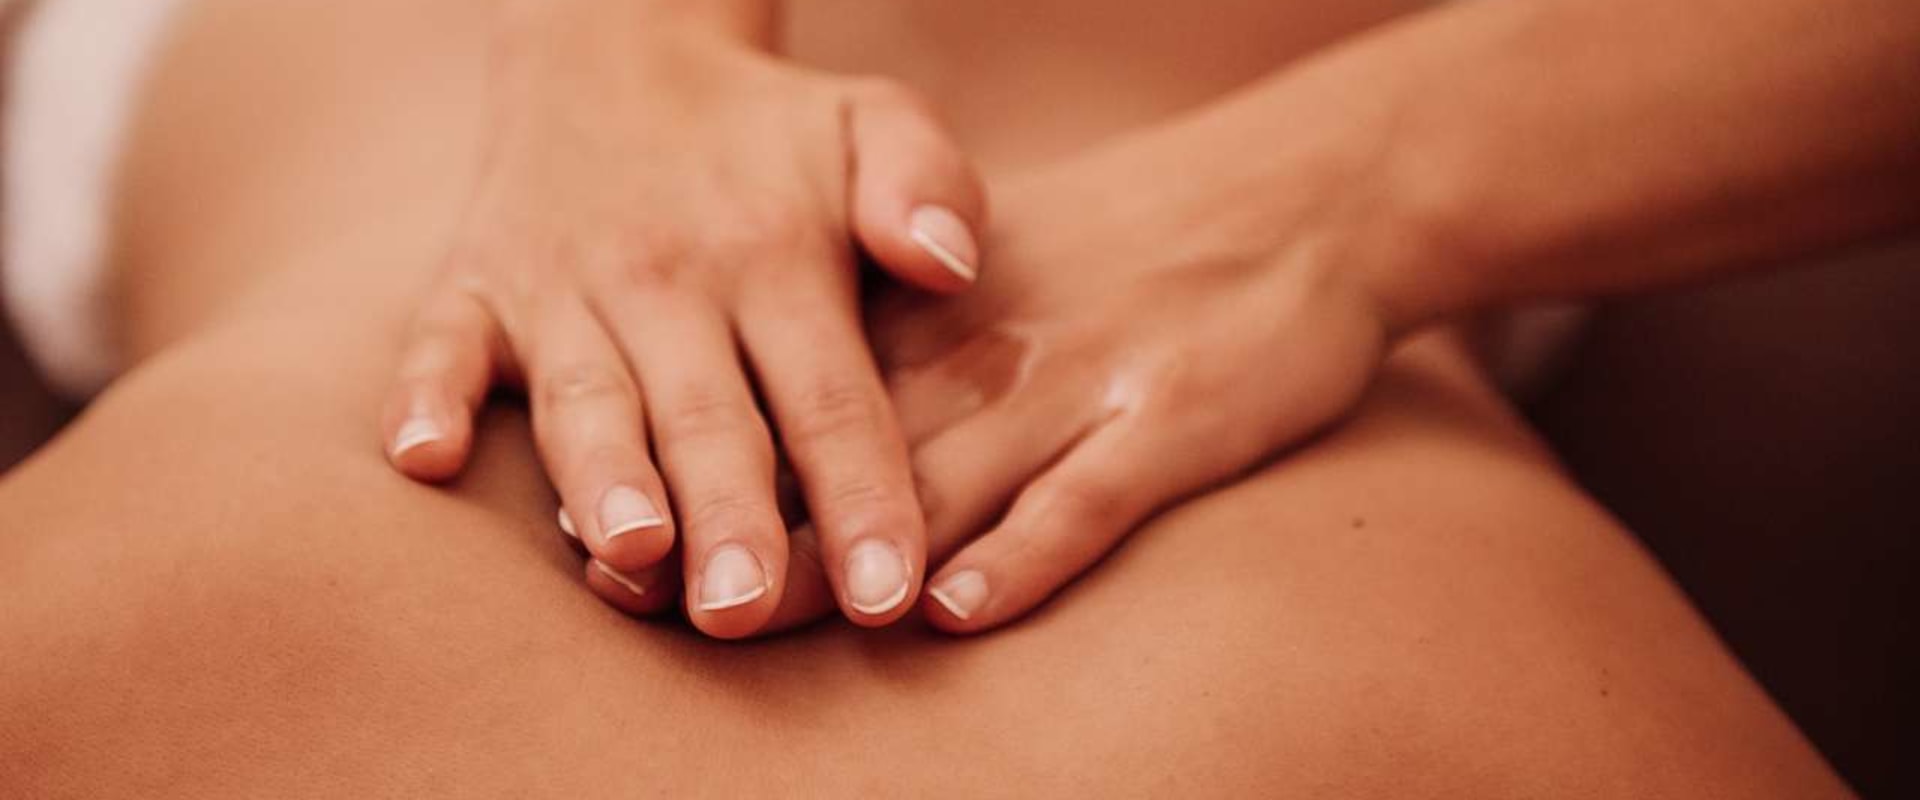 Wie lange dauert eine Massage normalerweise?